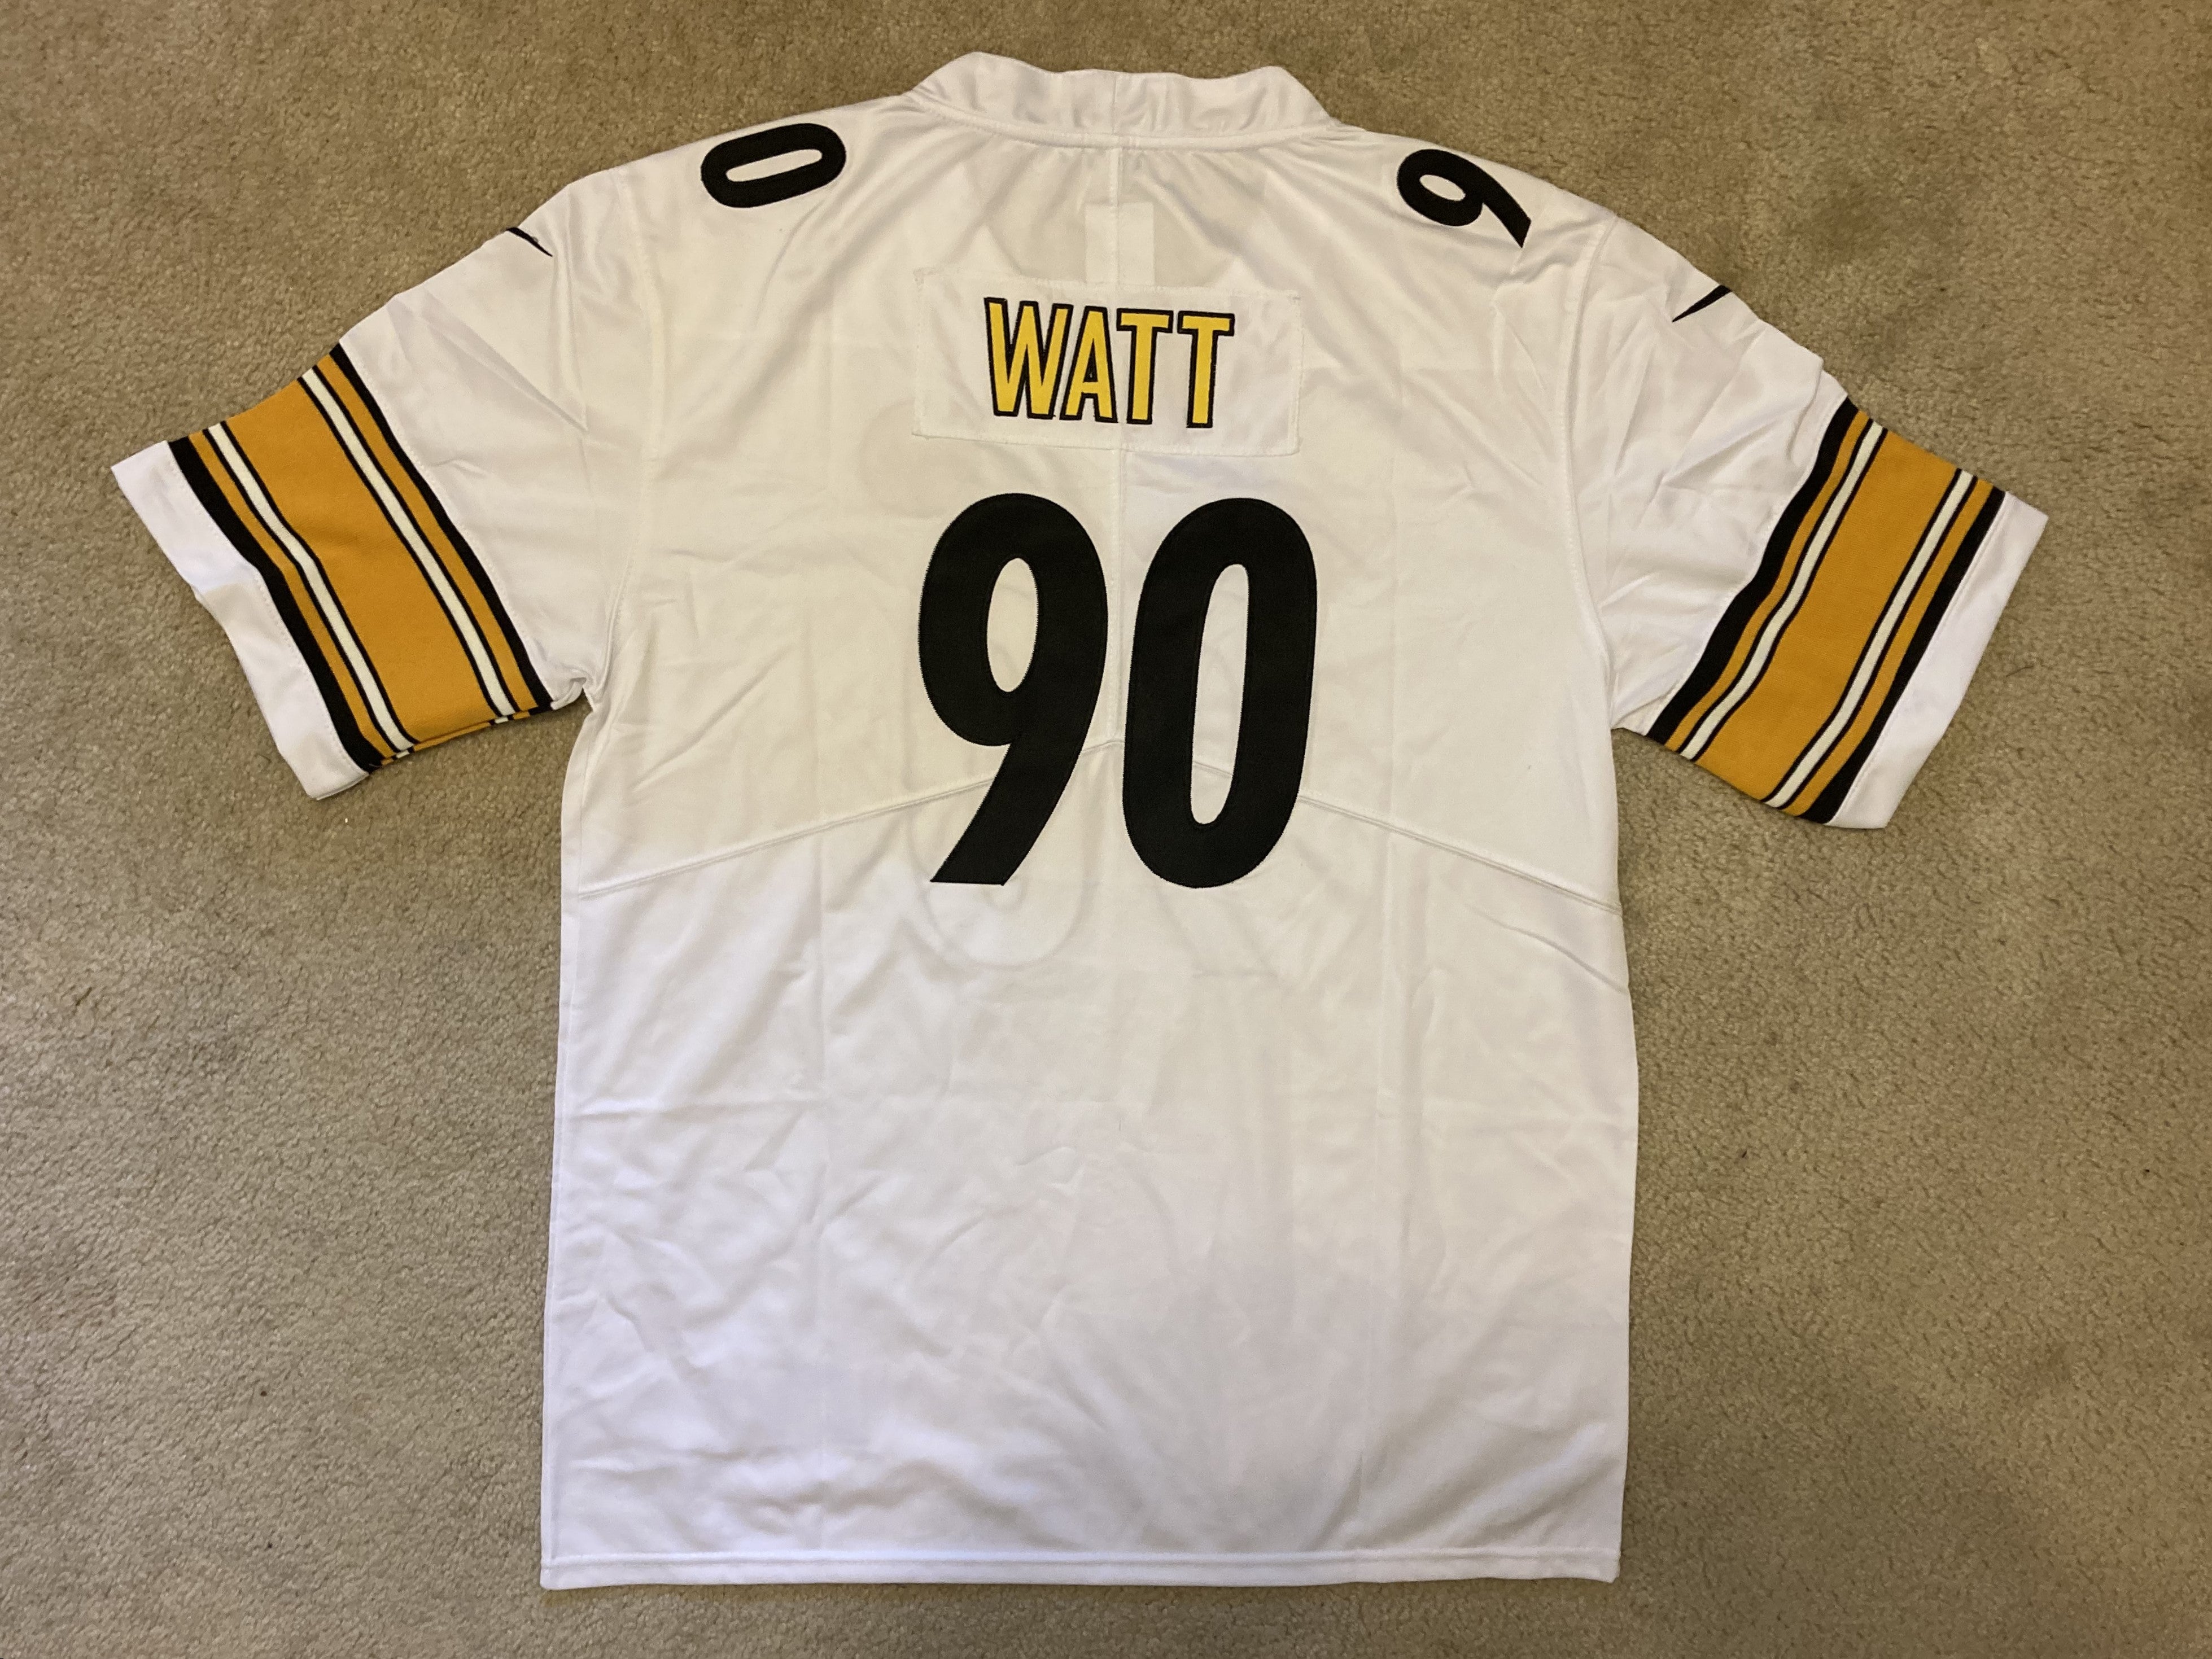 NEW - Men's Stitched Nike NFL Jersey - TJ Watt - Steelers - XL & XXL